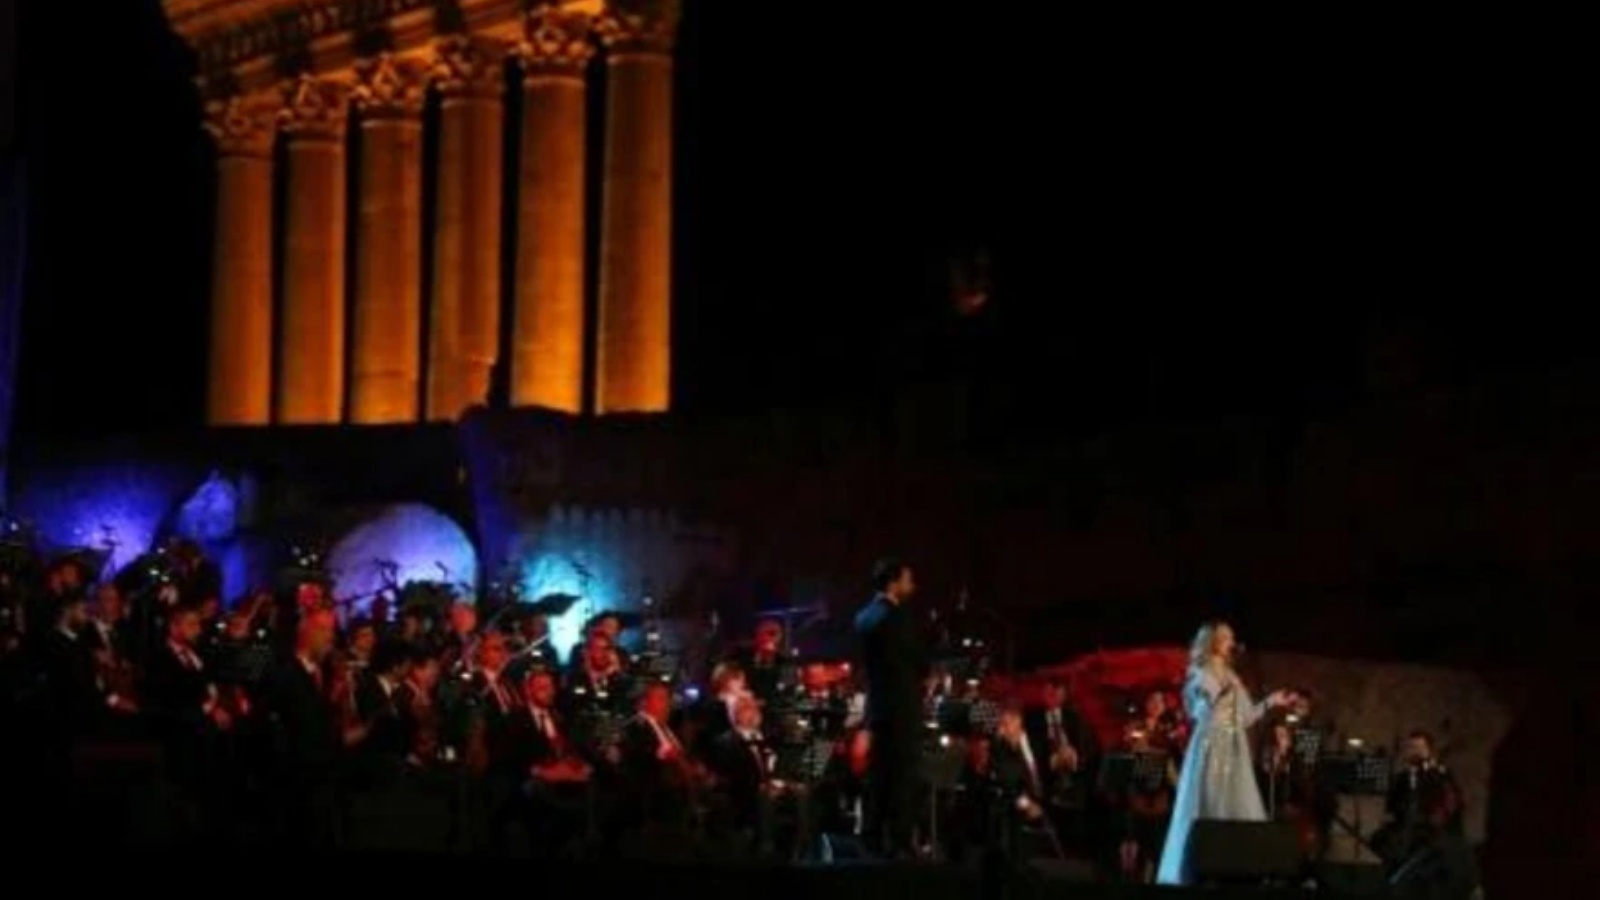 المغنية اللبنانية سمية بعلبكي تحيي حفلة في افتتاح مهرجانات بعلبك الدولية في شرق لبنان في الثامن من يوليو 2022